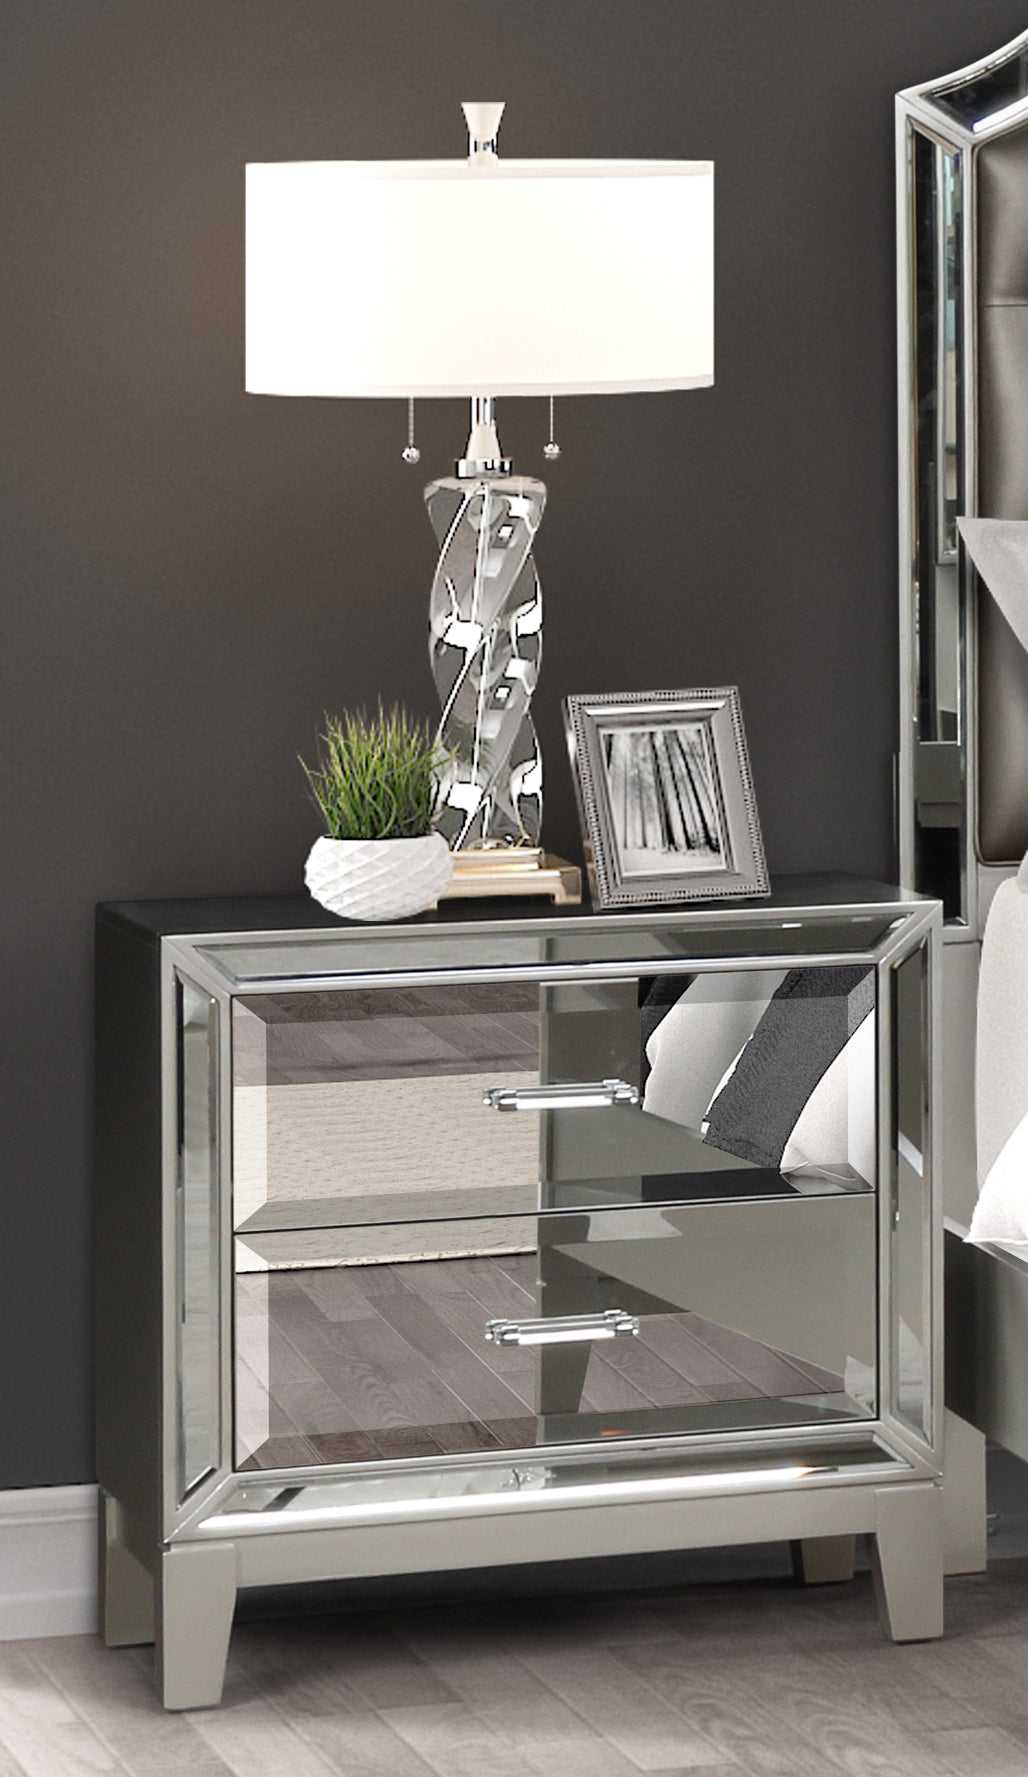 Silver Upholstered Queen 5 Piece Mirror Bedroom Set